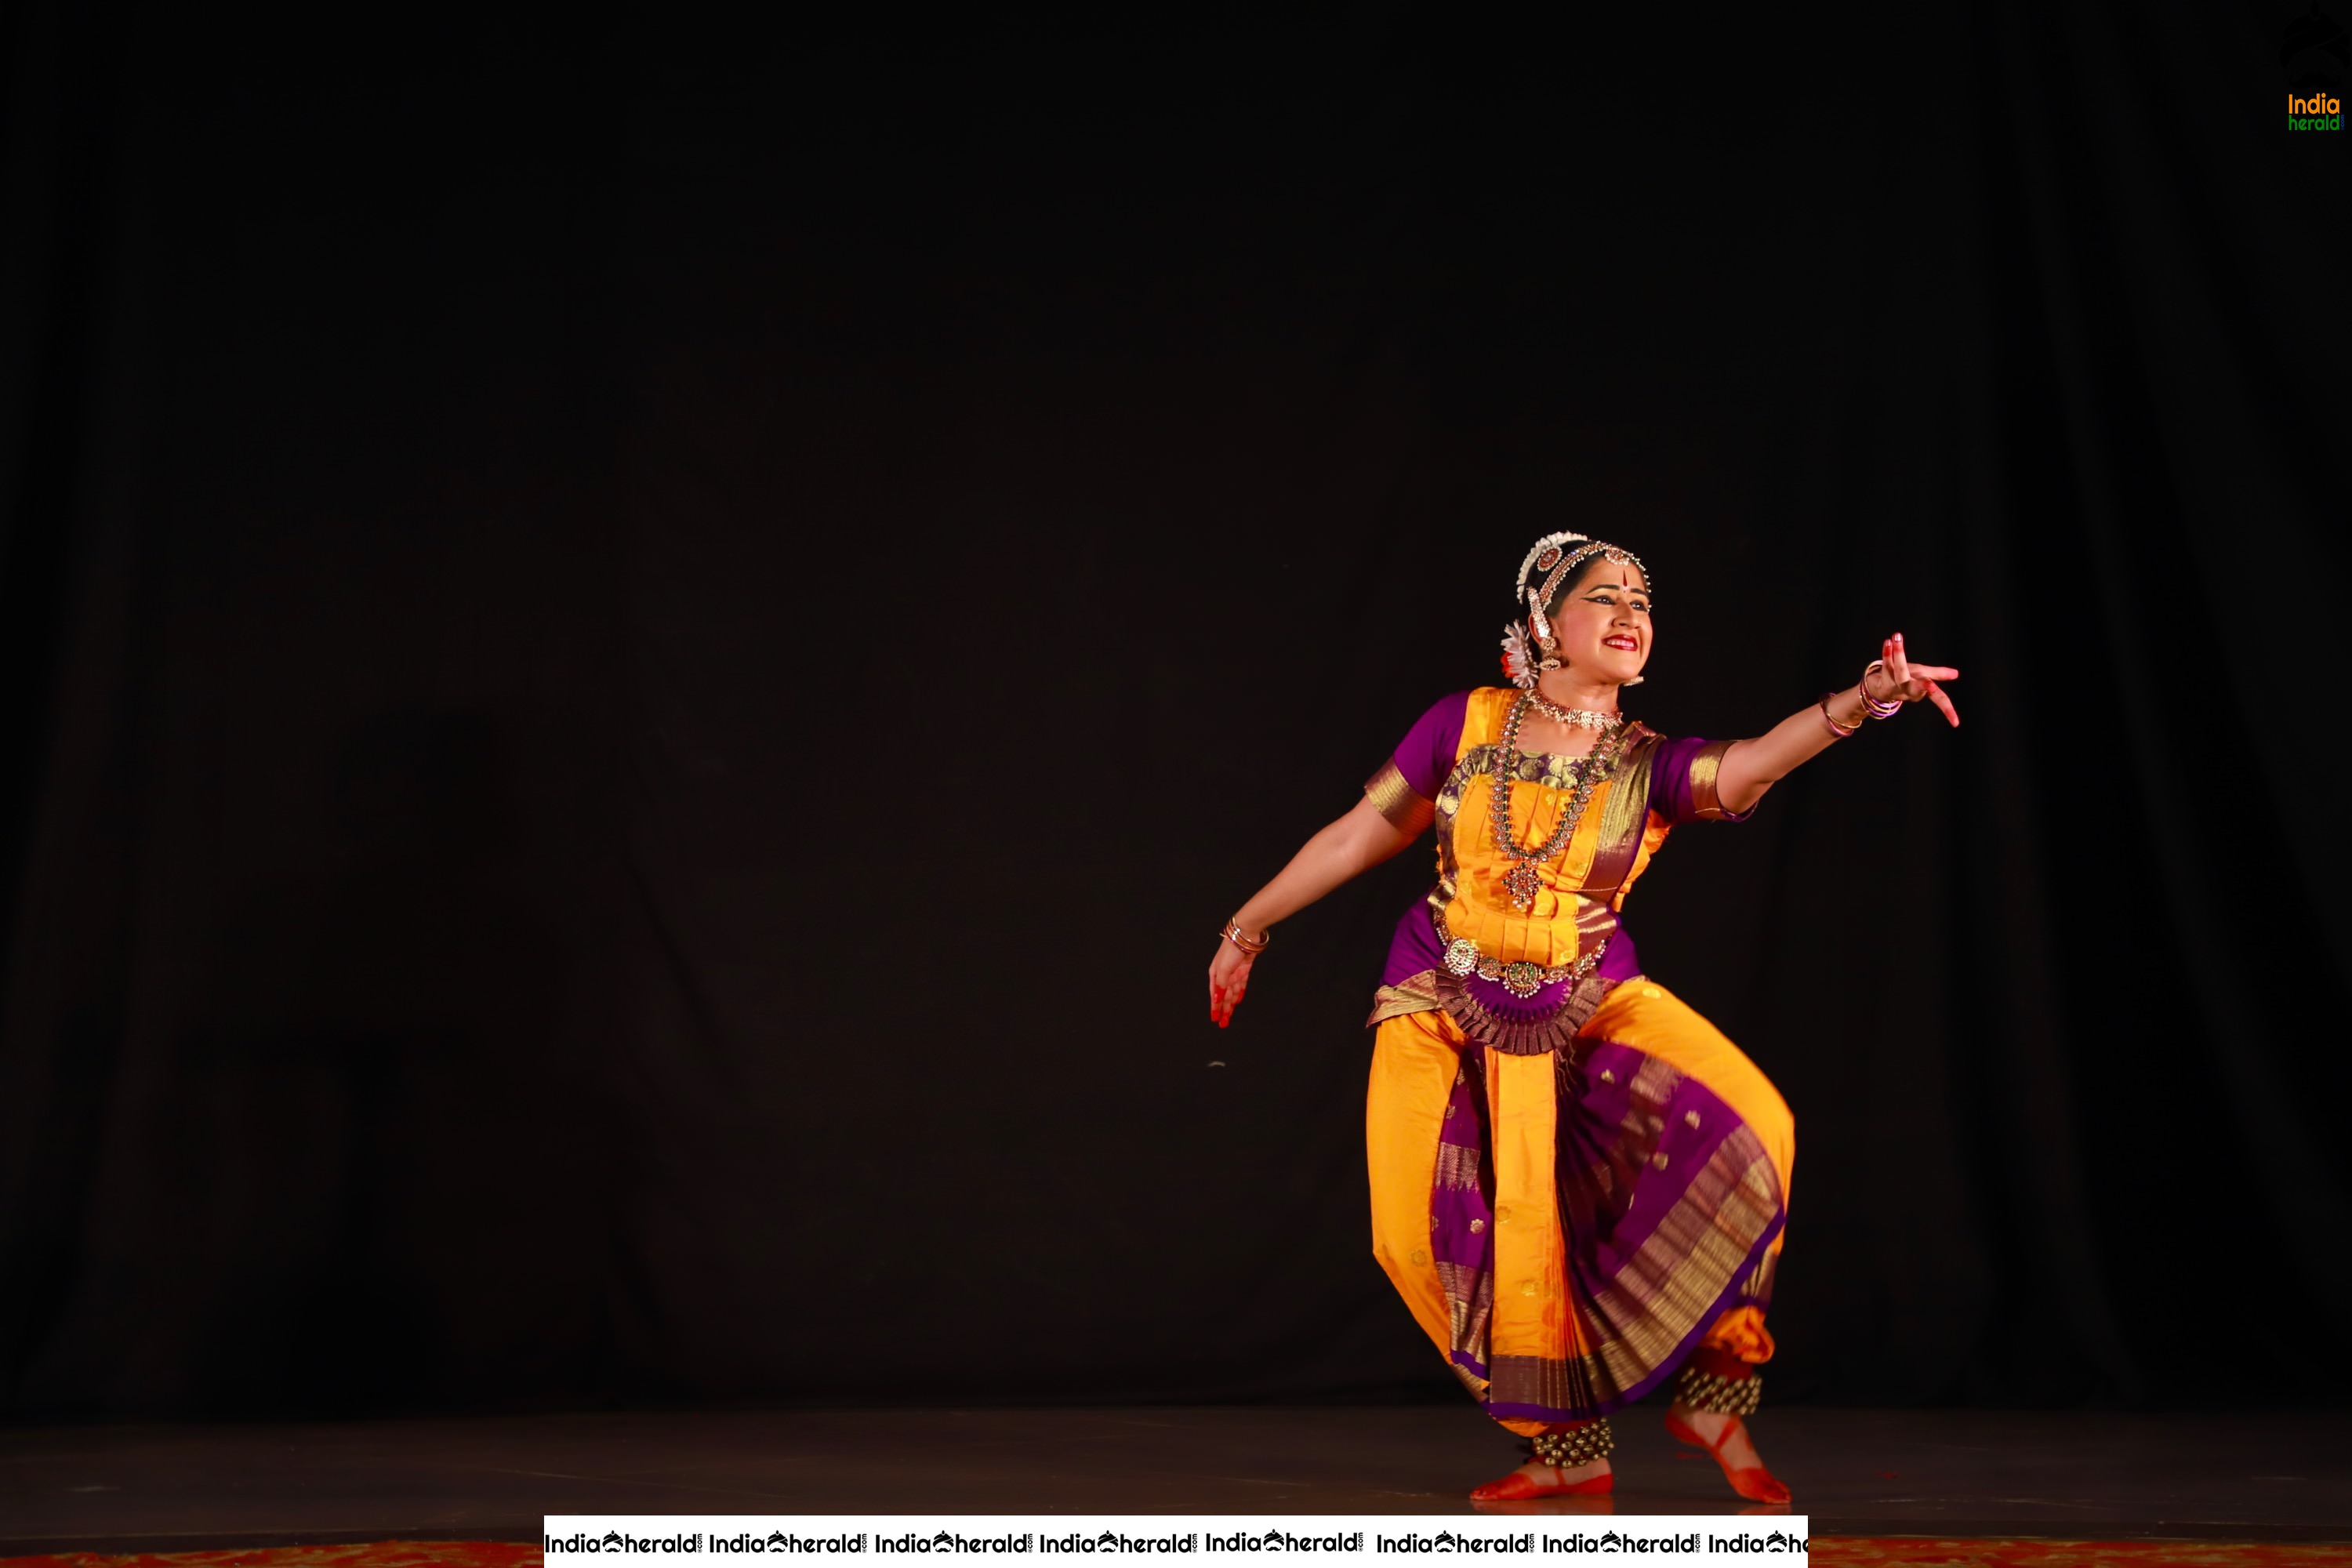 Event Stills of Dance Recital of Samyuktha Shankar